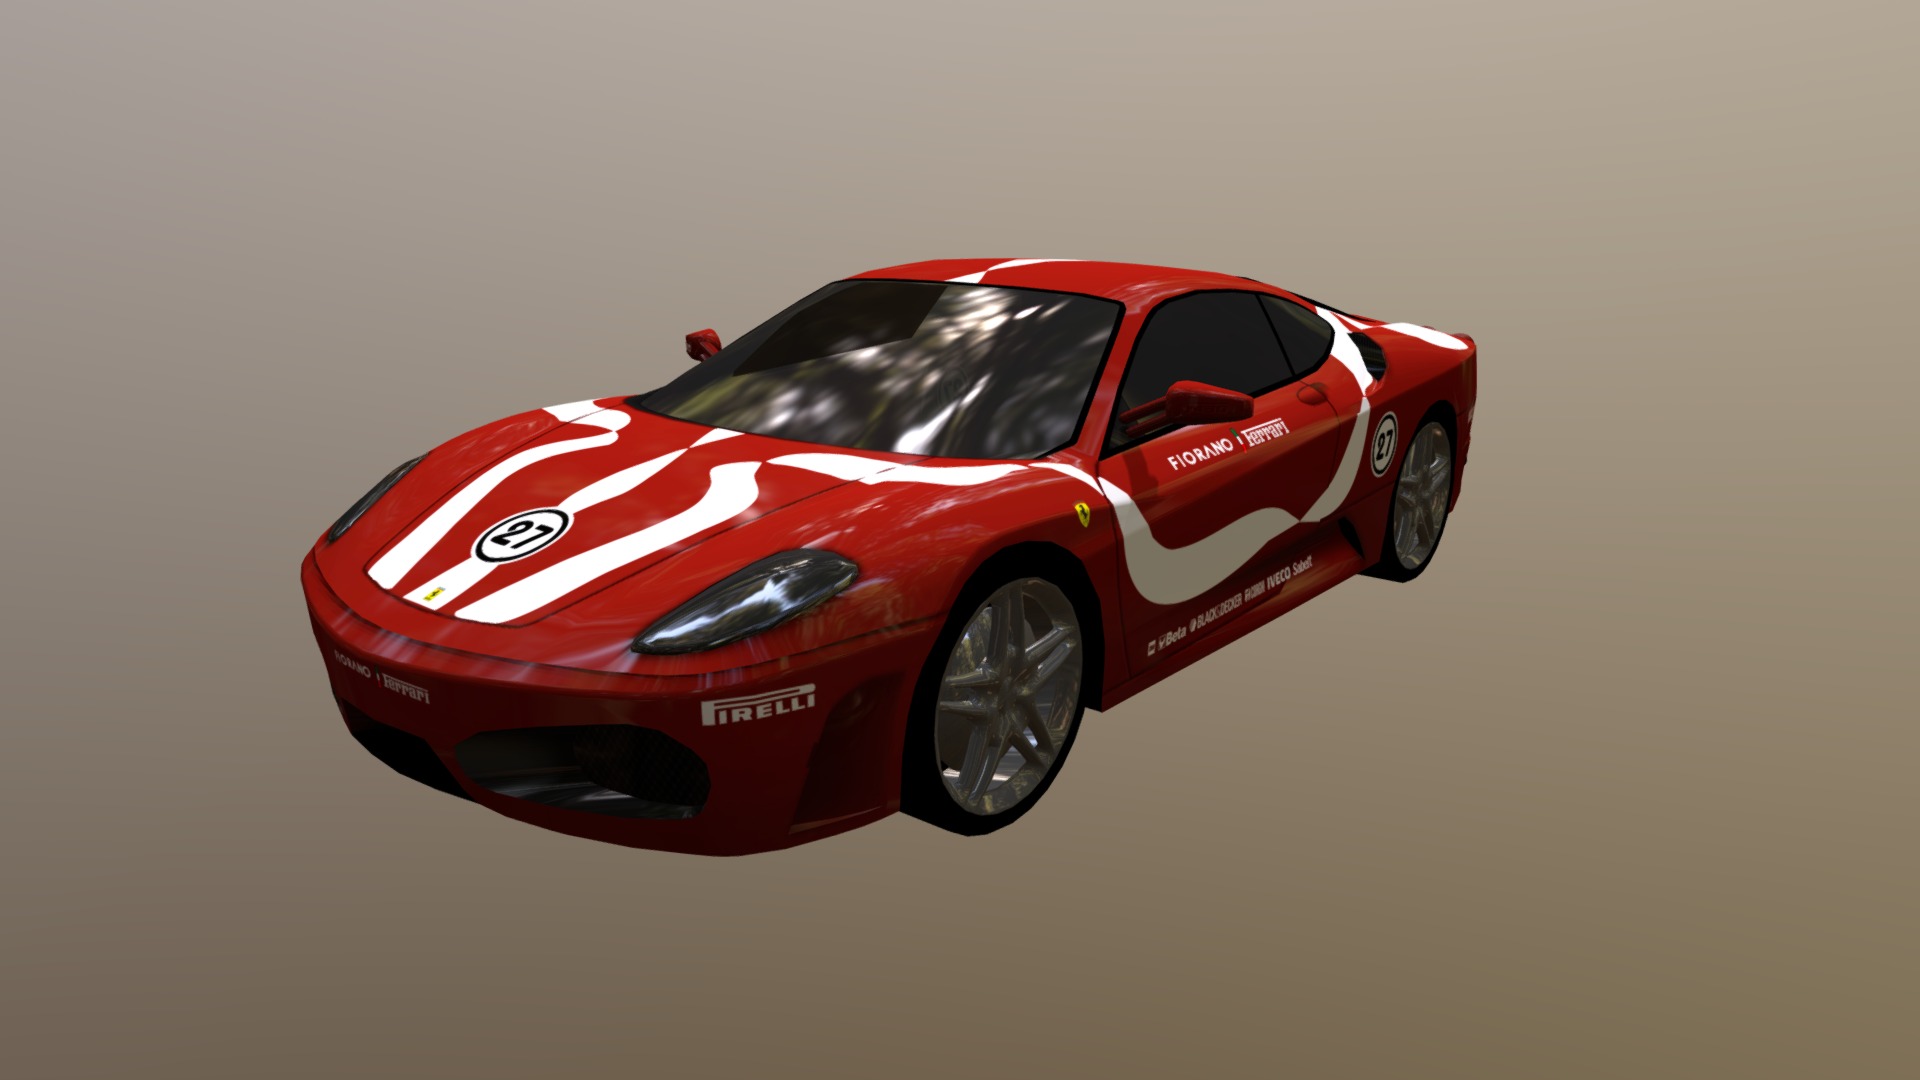 3D model Ferrari F430 Burago - This is a 3D model of the Ferrari F430 Burago. The 3D model is about a red sports car.